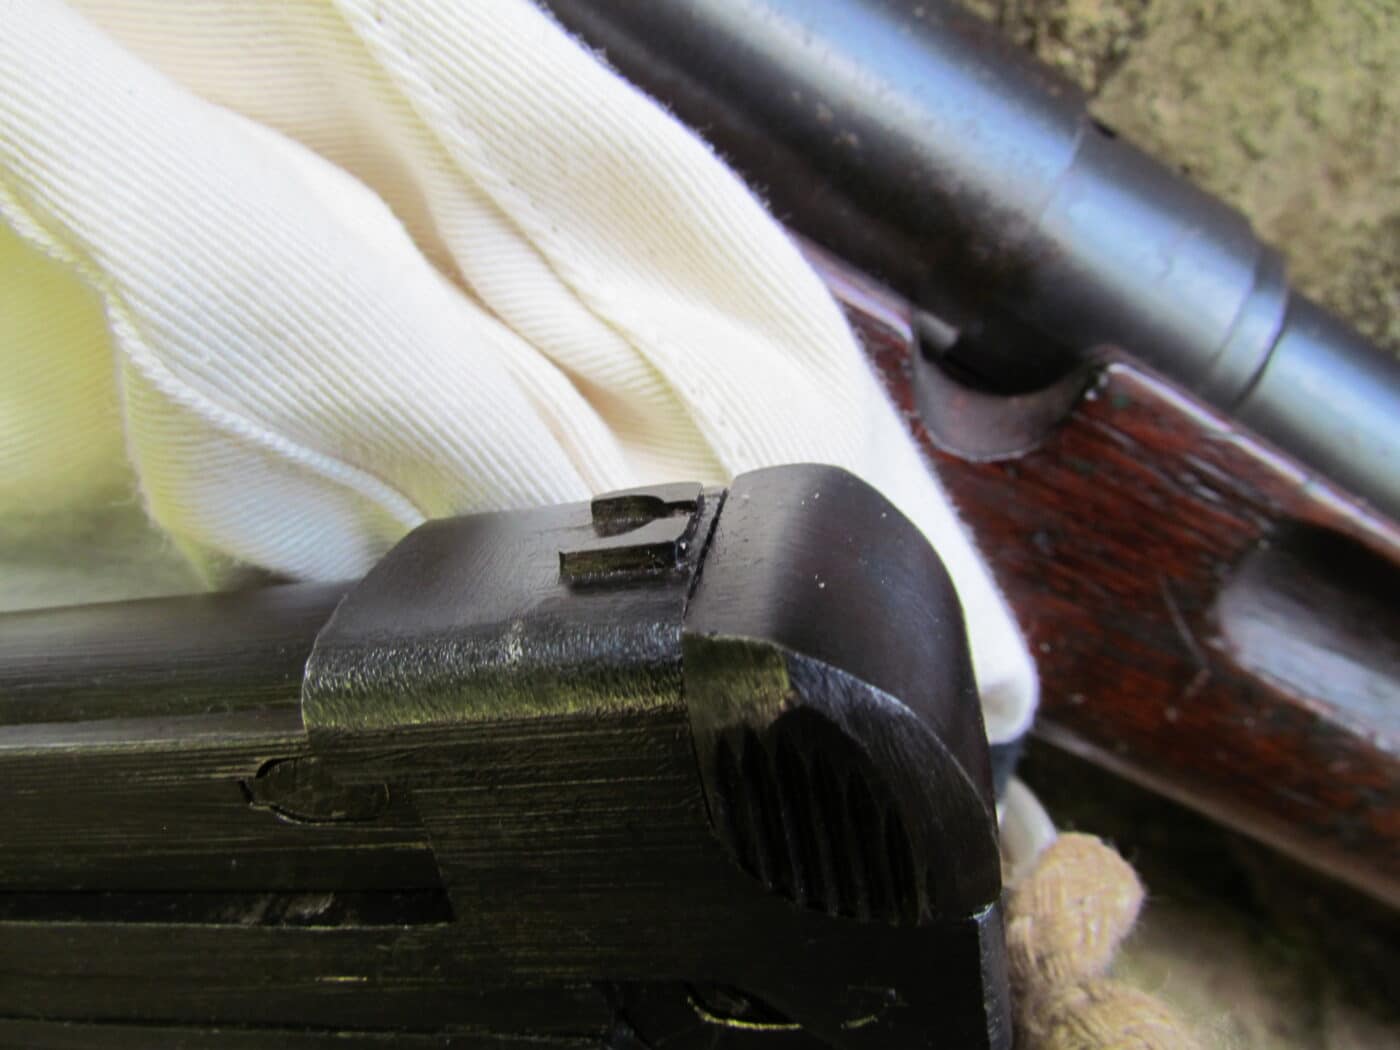 Sights on Nambu Type 94 pistol